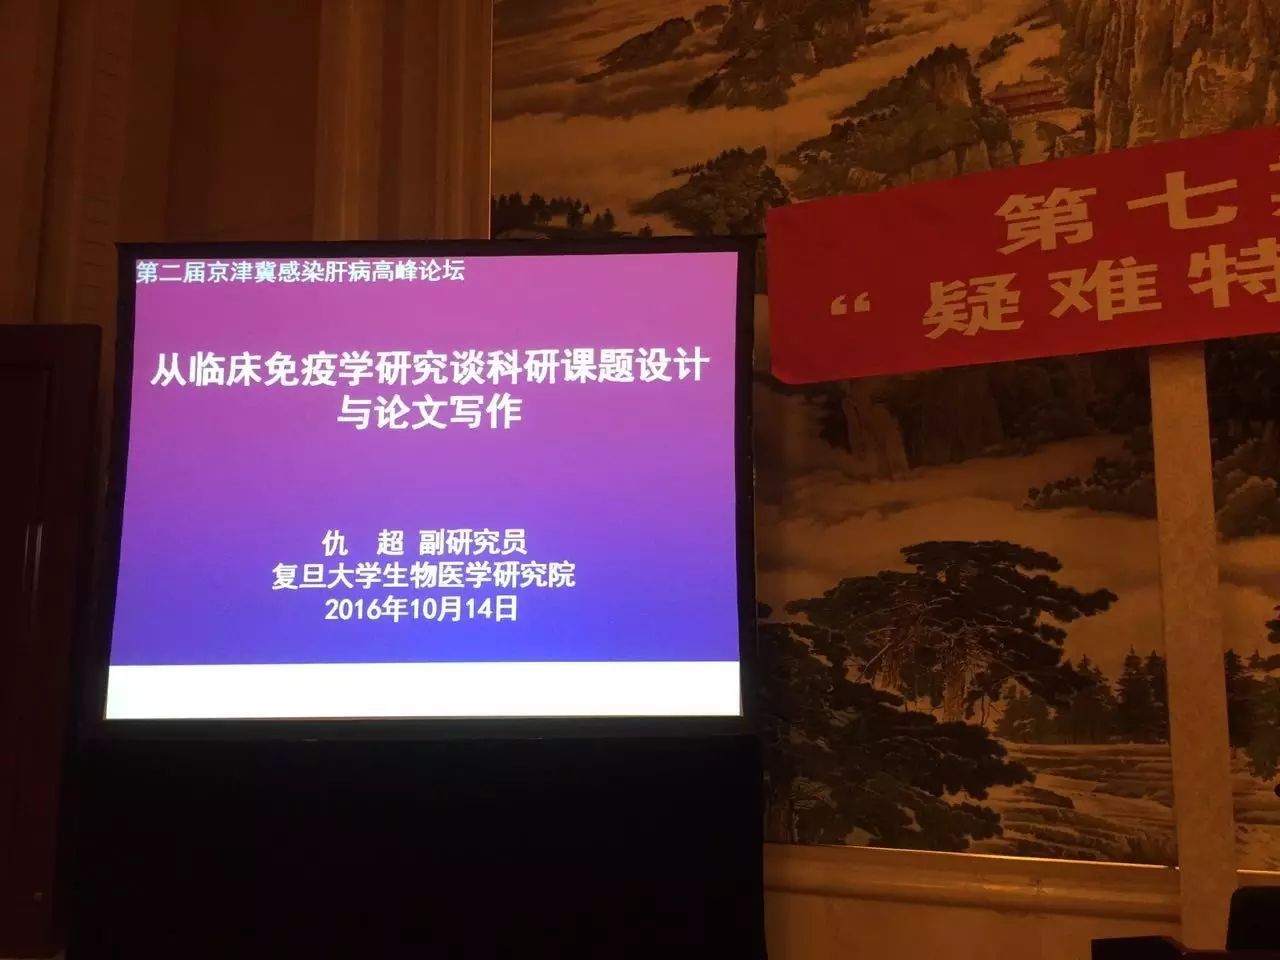 【会议盛况】第二届京津冀感染肝病高峰论坛 